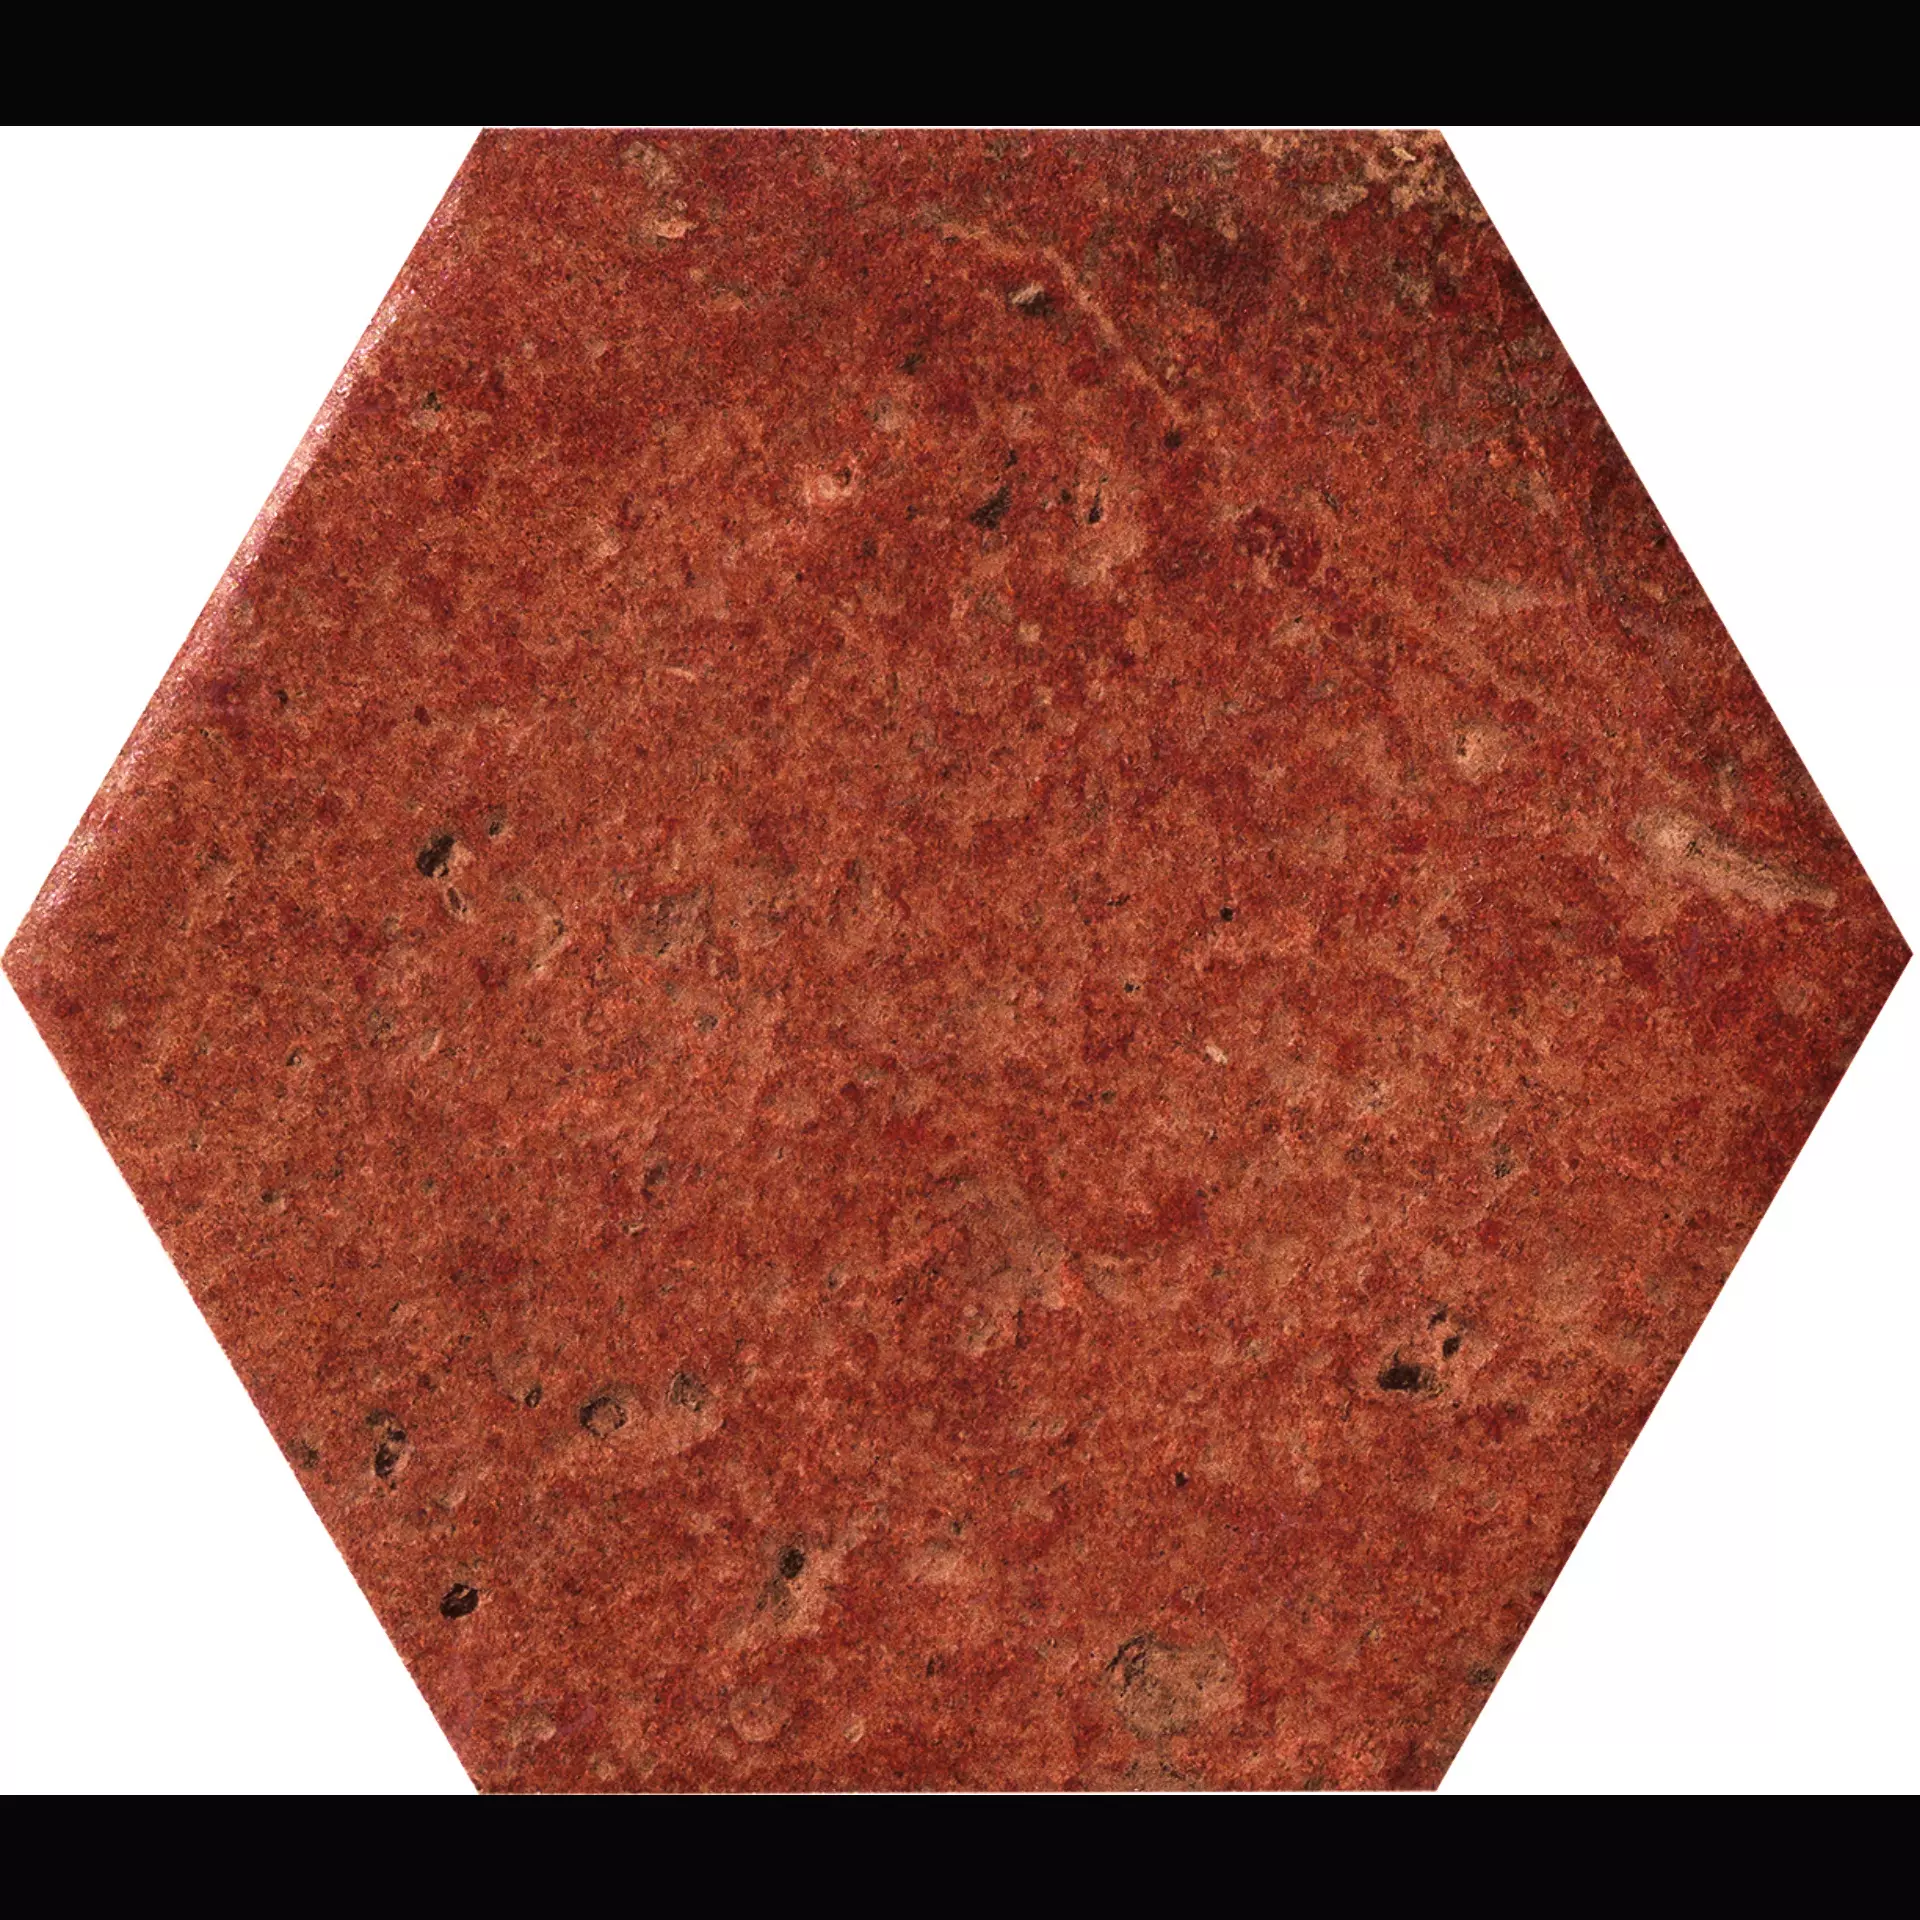 CIR Cotto Del Campiano Rosso Siena Naturale Hexagon 1080615 15,8x18,3cm 10mm